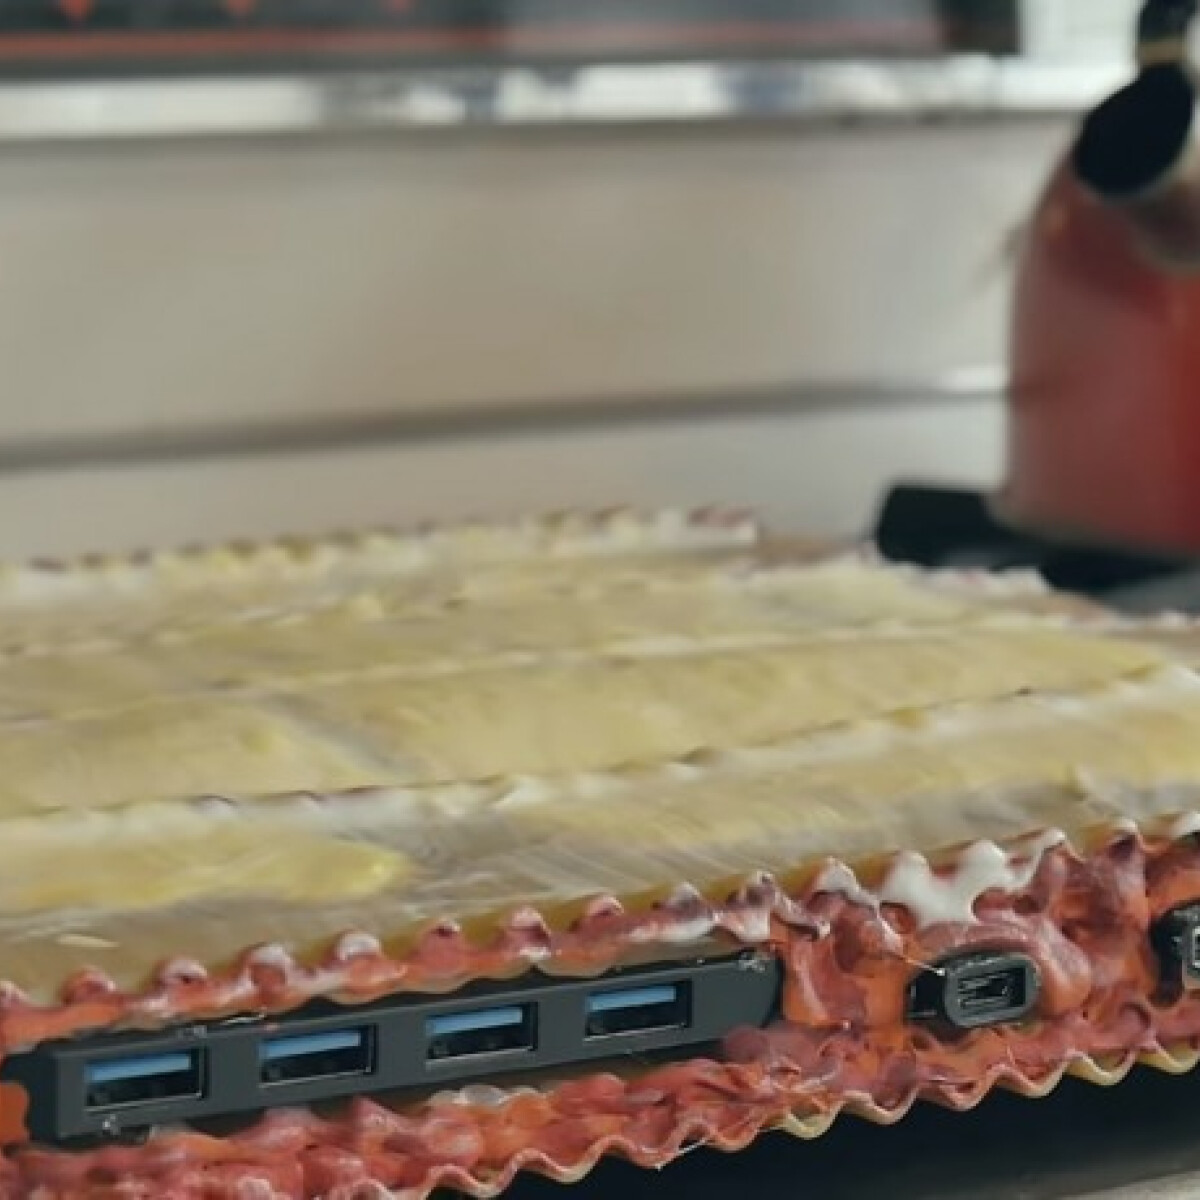 Itt a bizonyíték, hogy tésztából is lehet számítógépet építeni! - De vajon működik is?